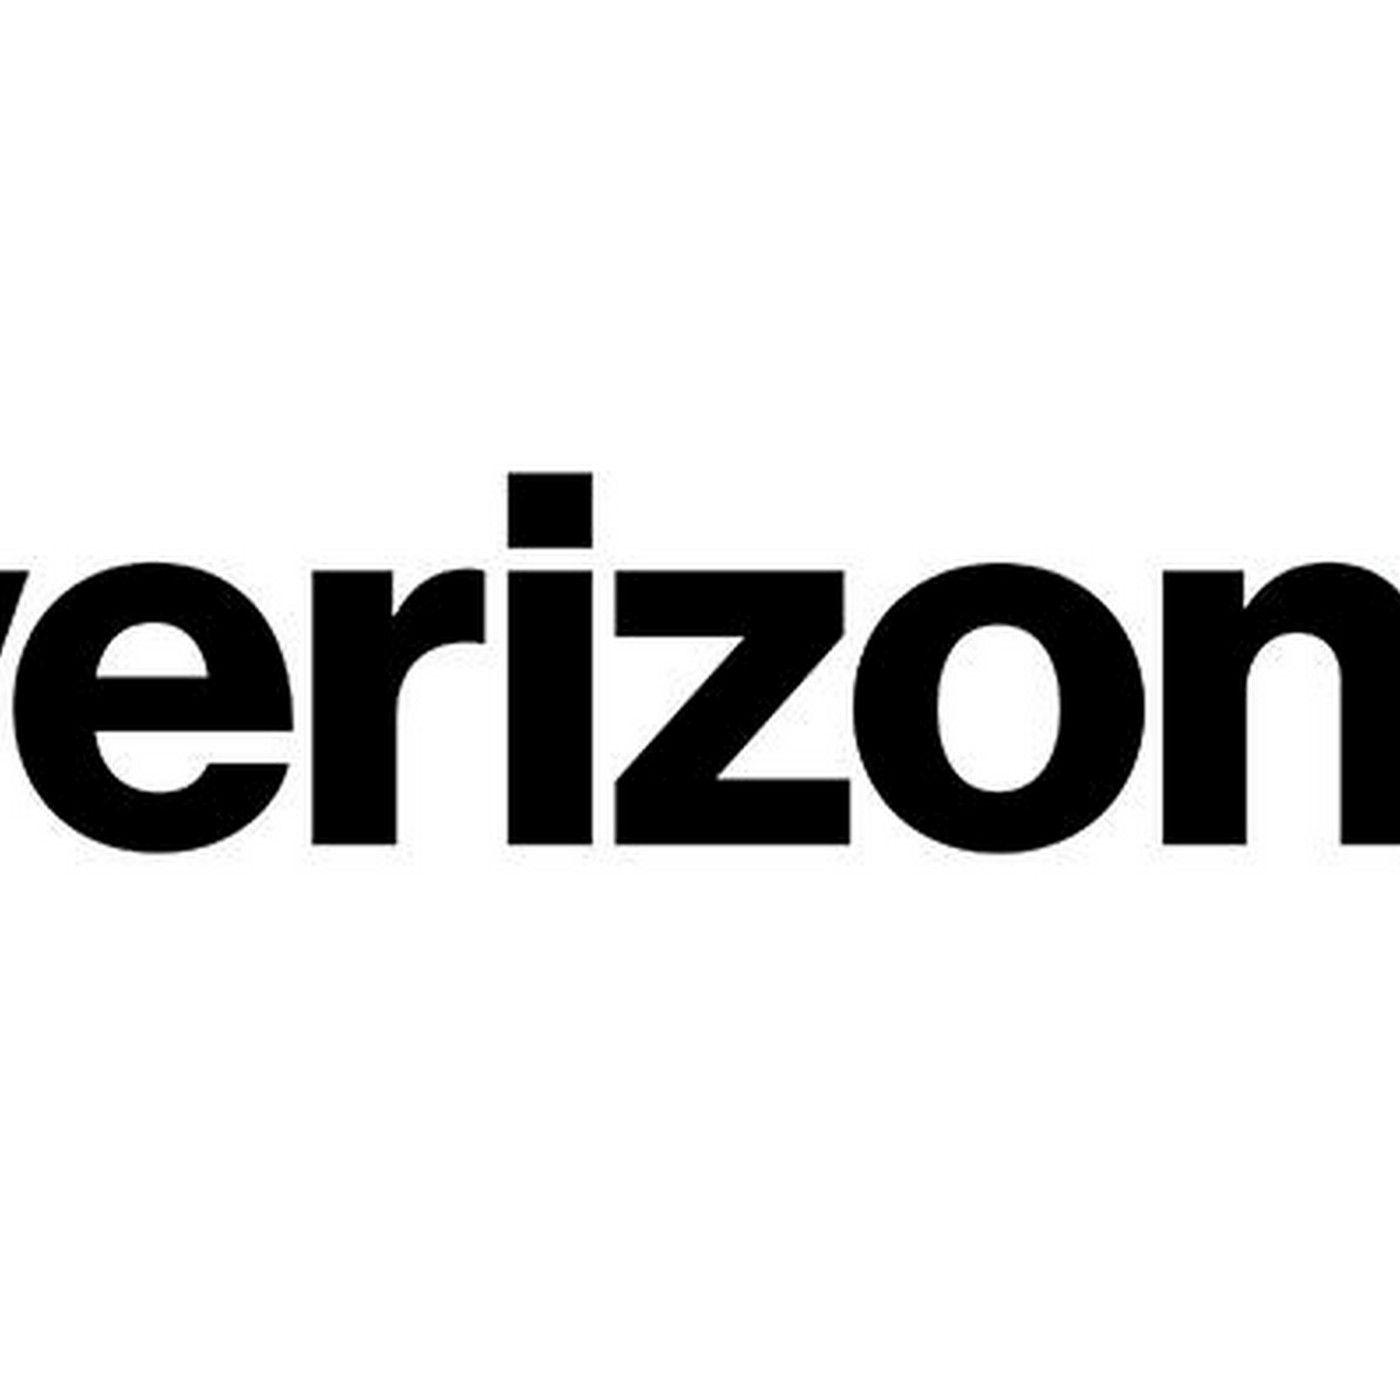 Verzion Logo - Verizon just unveiled a new logo - The Verge